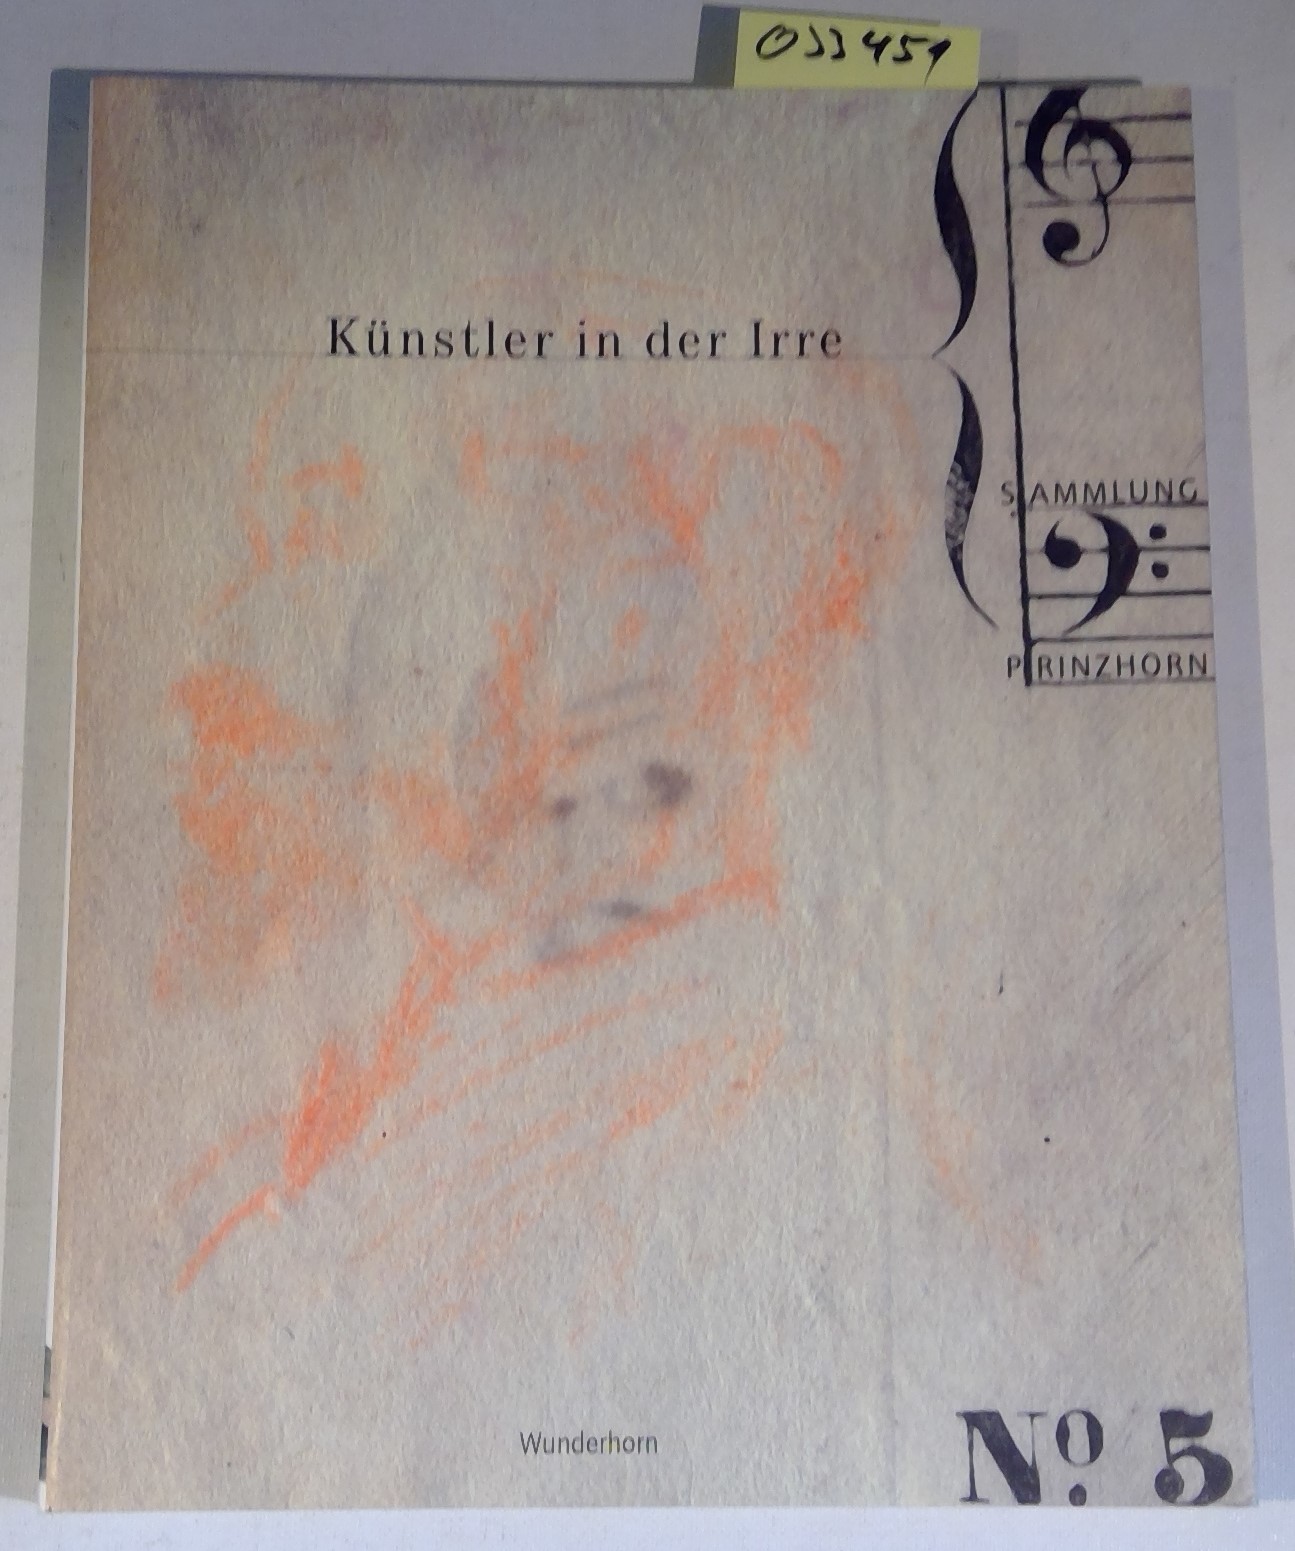 Künstler in der Irre: Prinzhorn Sammlung / Katalog zur Ausstellung in heidelberg 30.4.-14.9.2008 - Brand-Claussen, Bettina/ Röske, Thomas (Hrsg.)